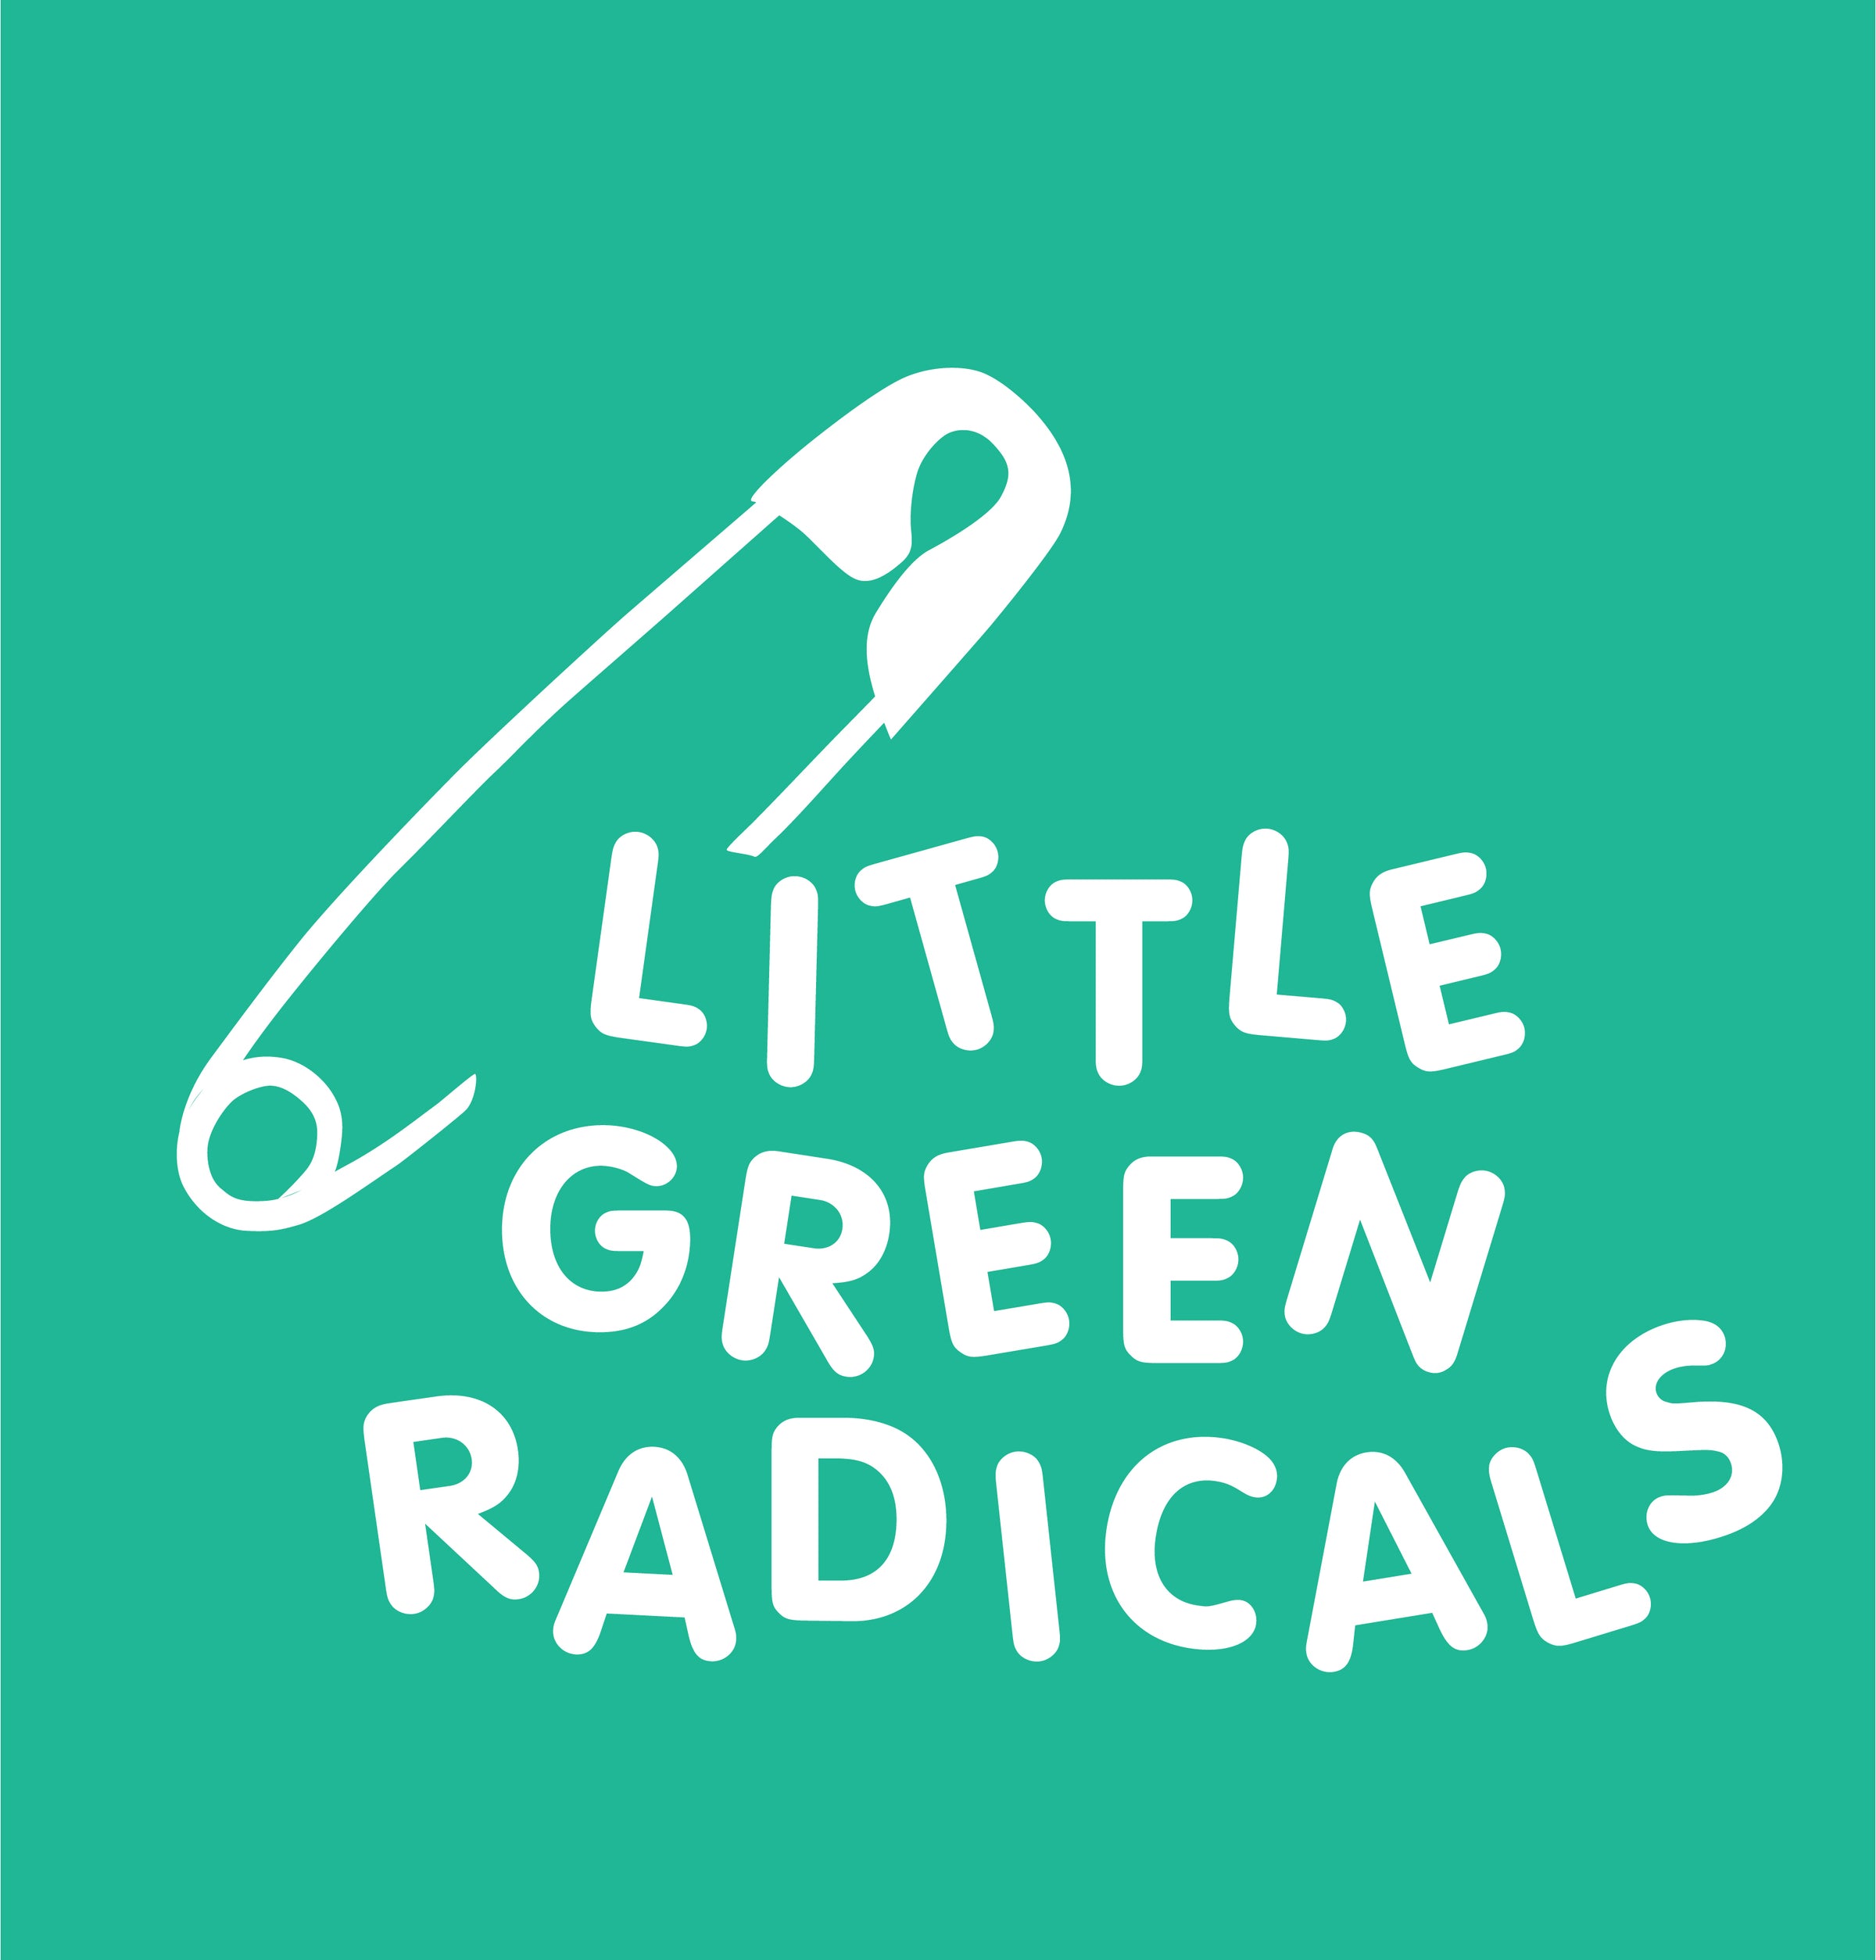 LITTLE GREEN RADICALS